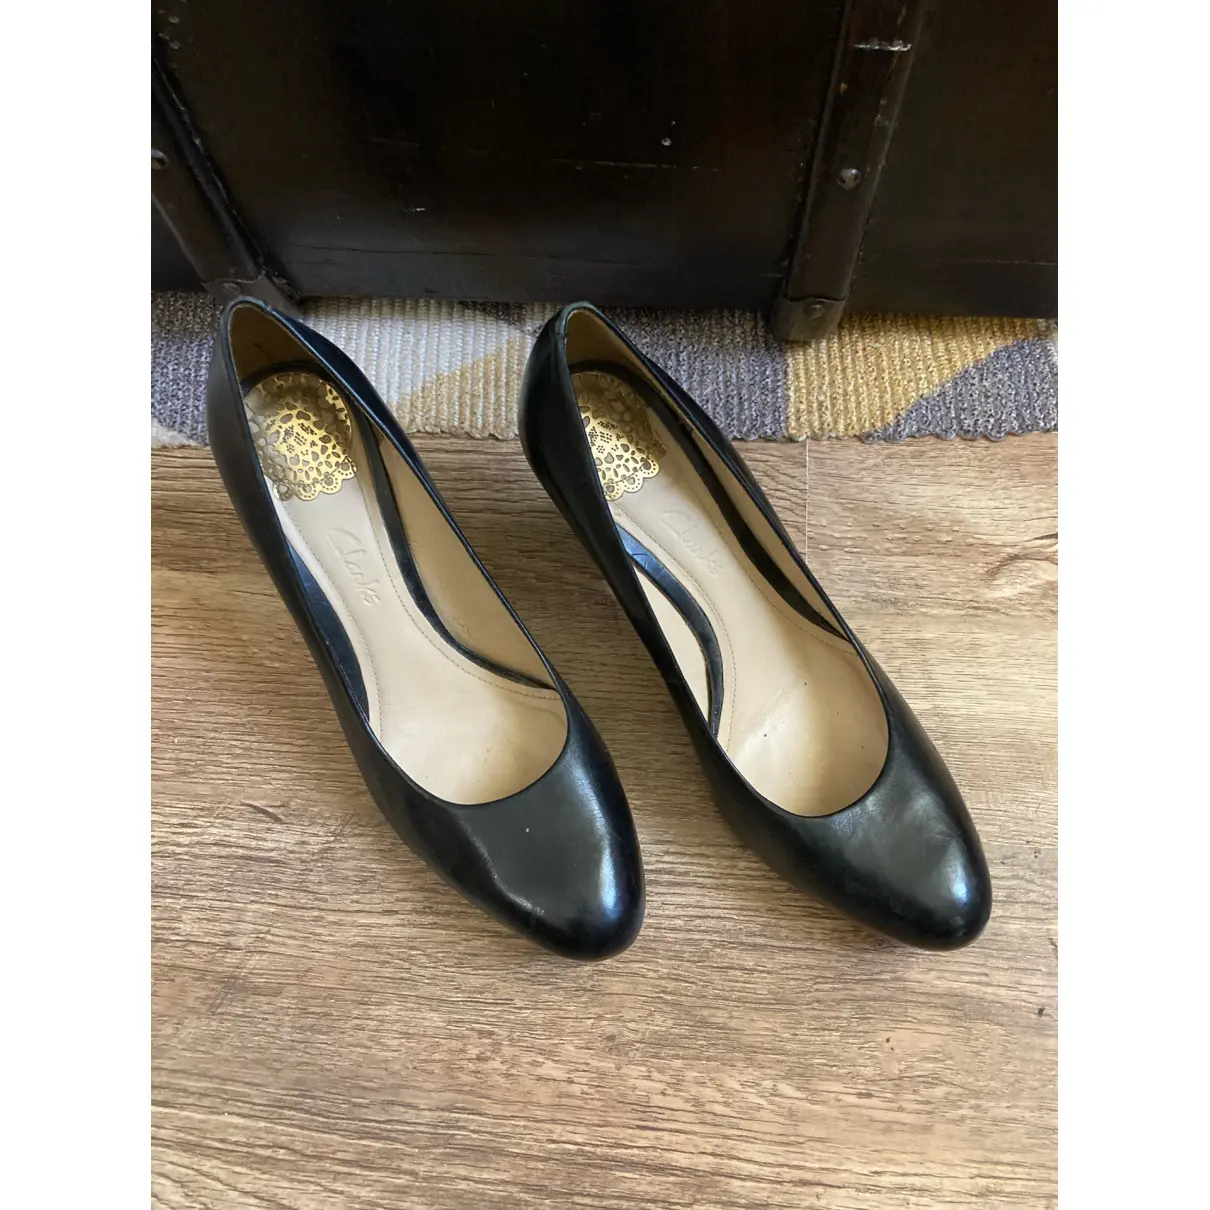 Buy Clarks Leather heels online